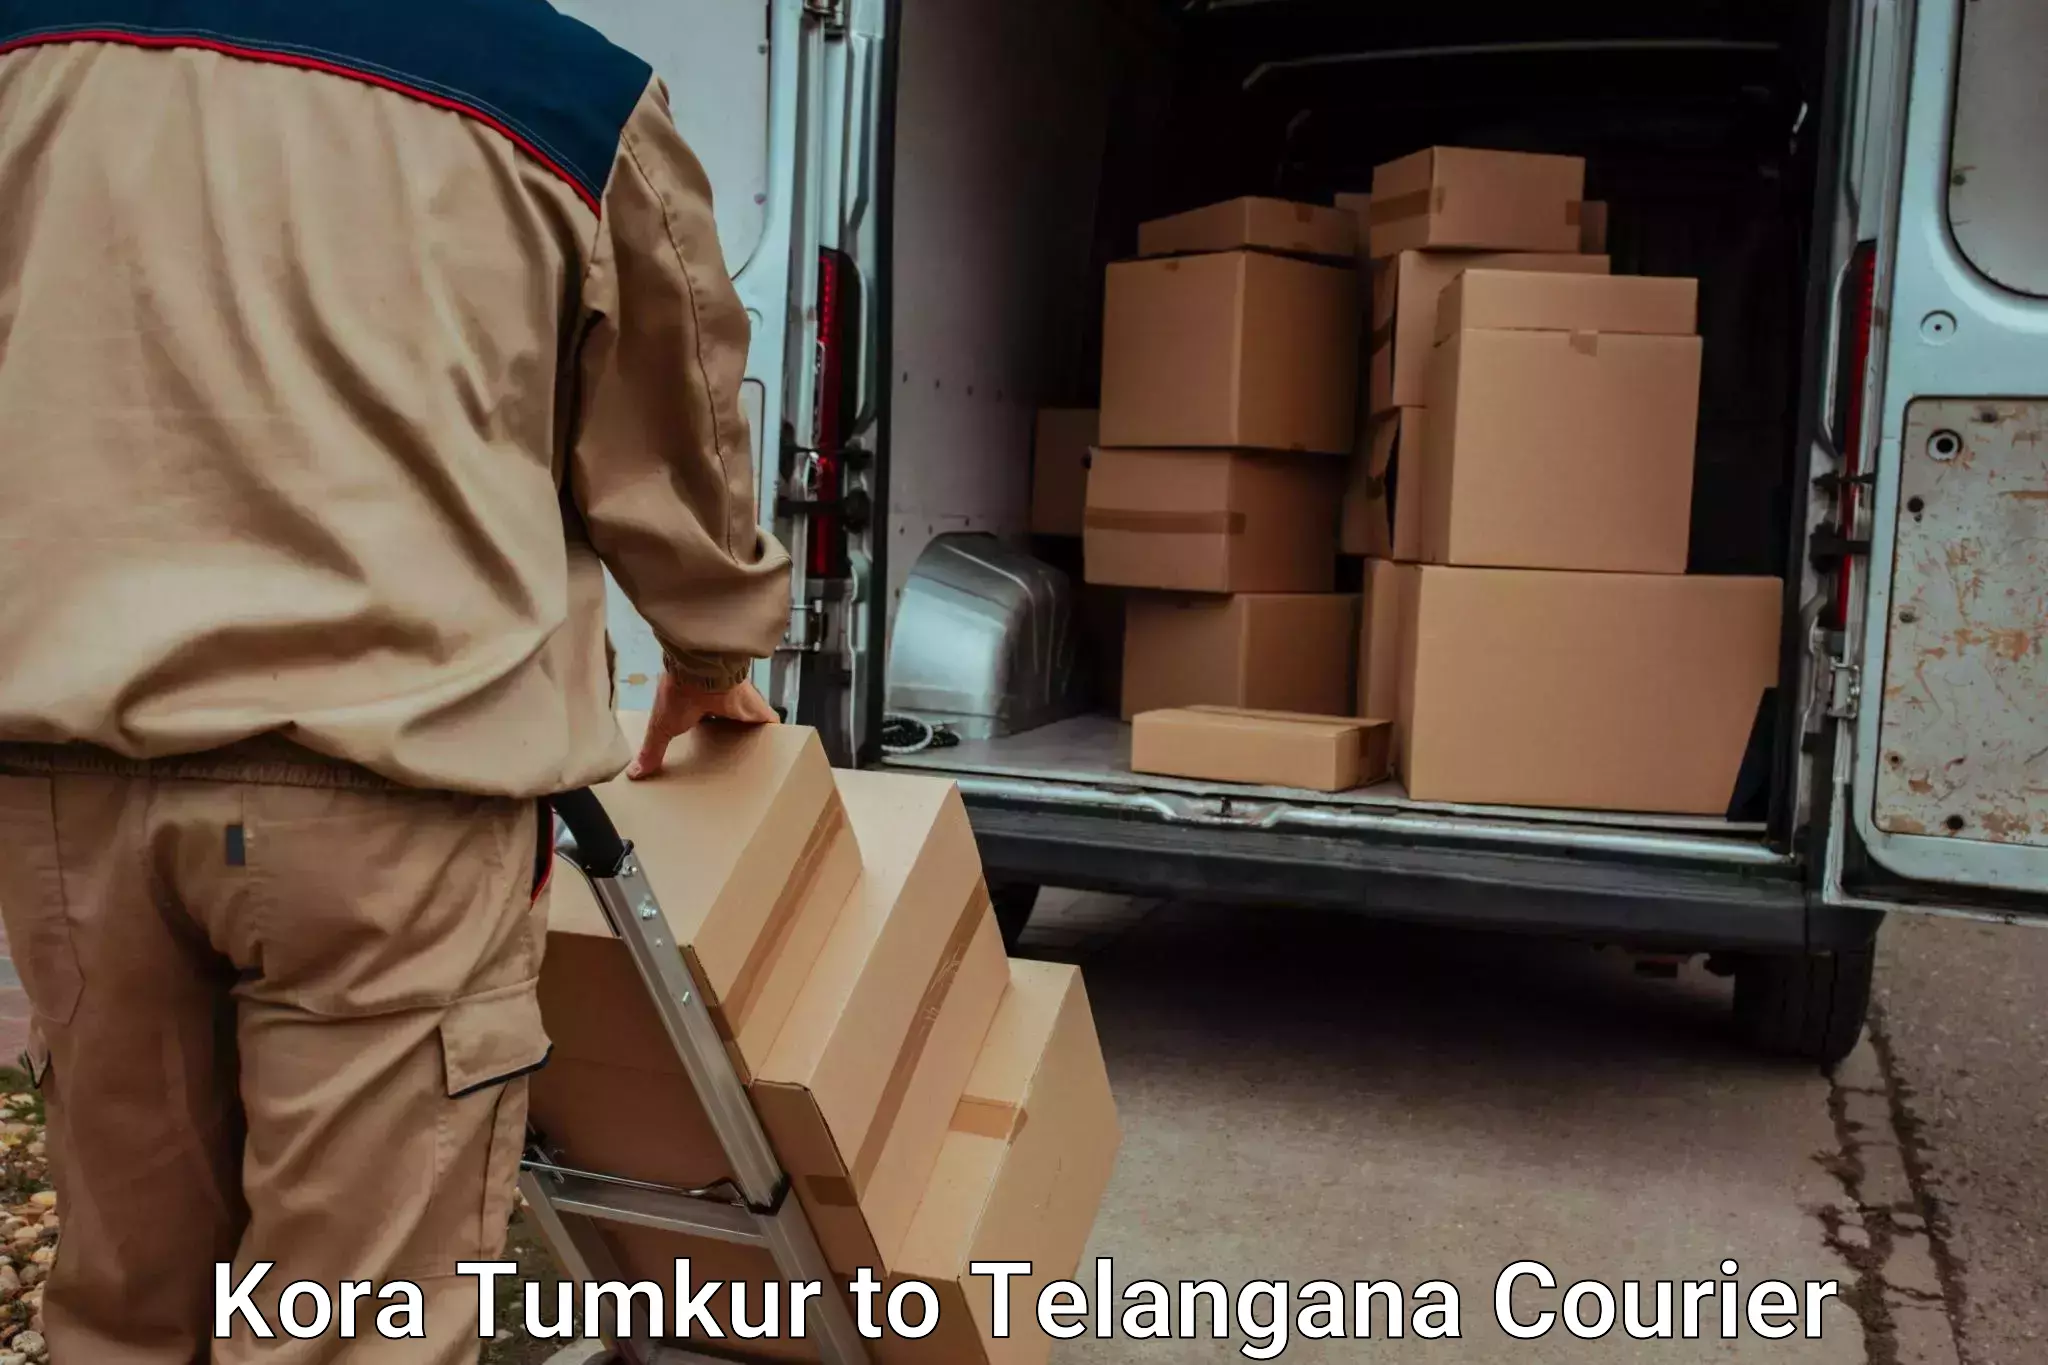 Excess baggage transport Kora Tumkur to Tallada